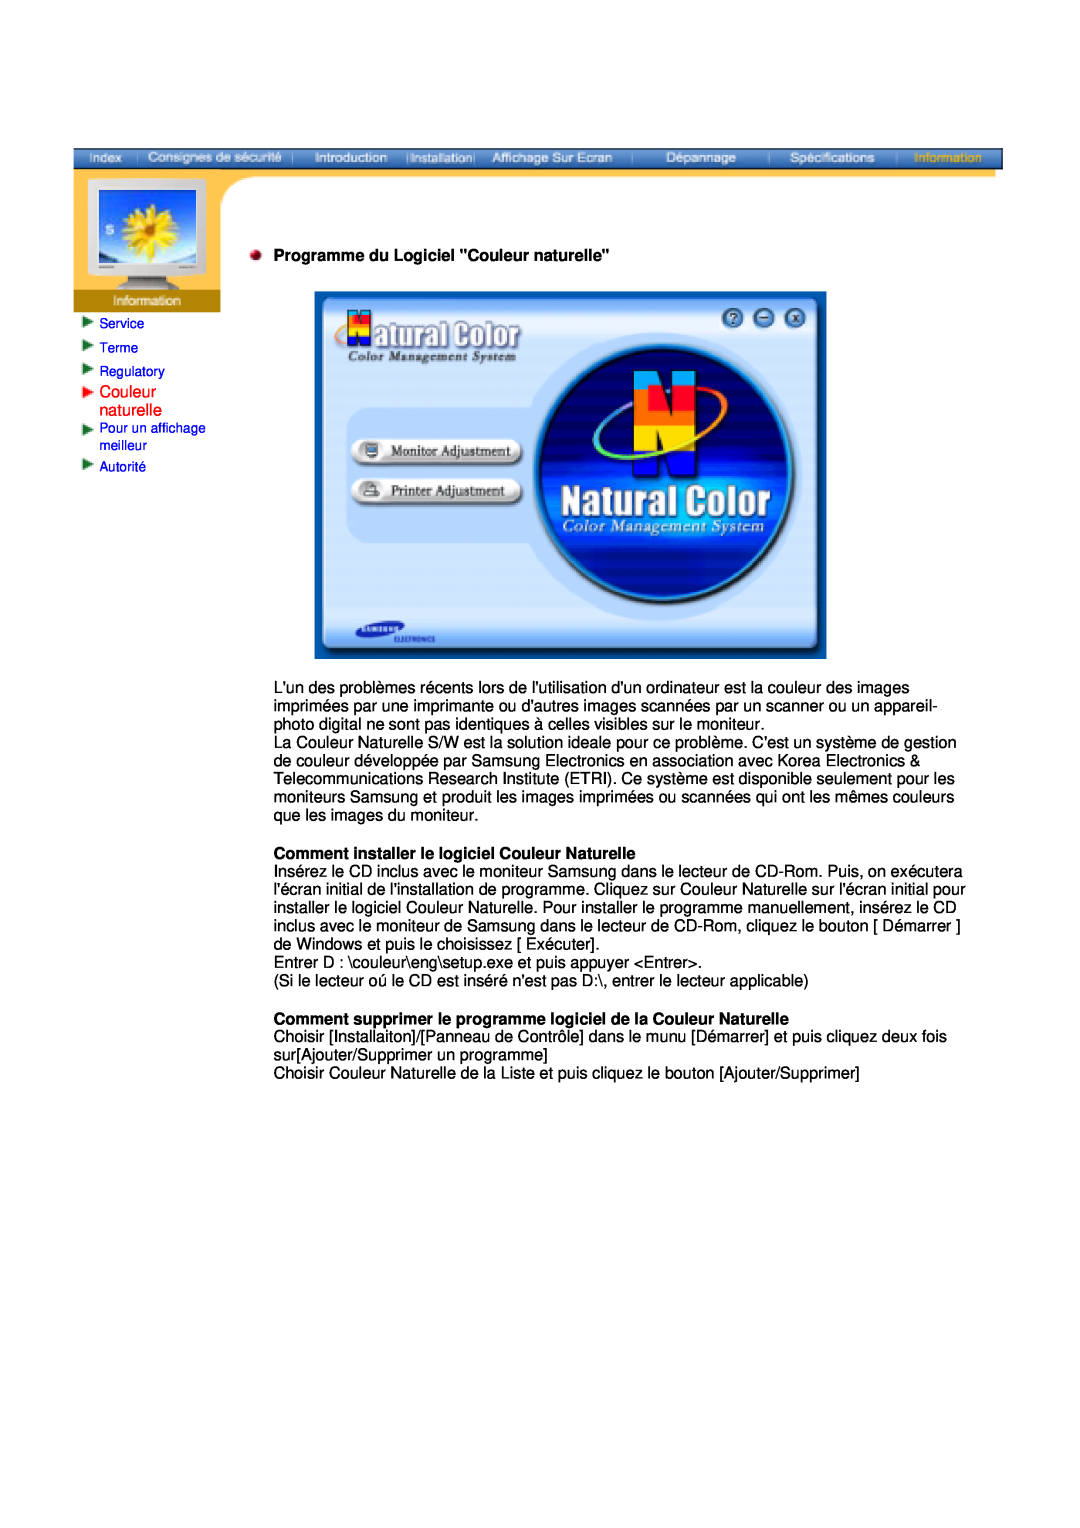 Samsung NB19BSPS/EDC manual Programme du Logiciel Couleur naturelle, Comment installer le logiciel Couleur Naturelle 